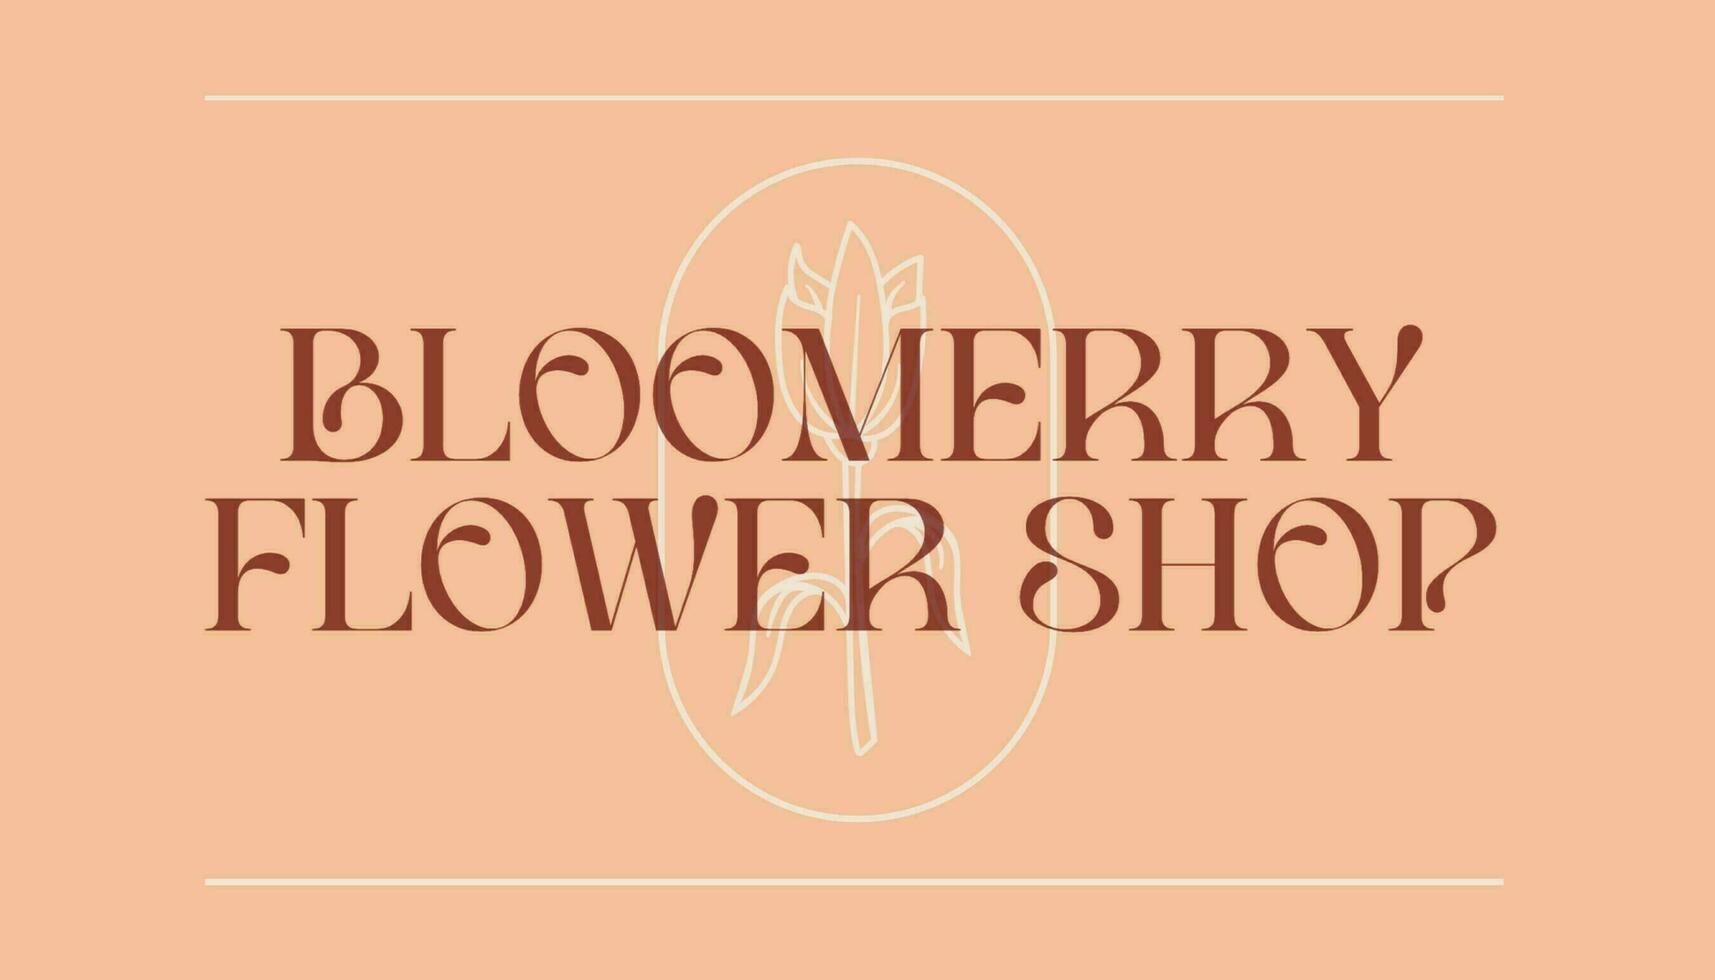 Flower Shop Business Card Horizontal template